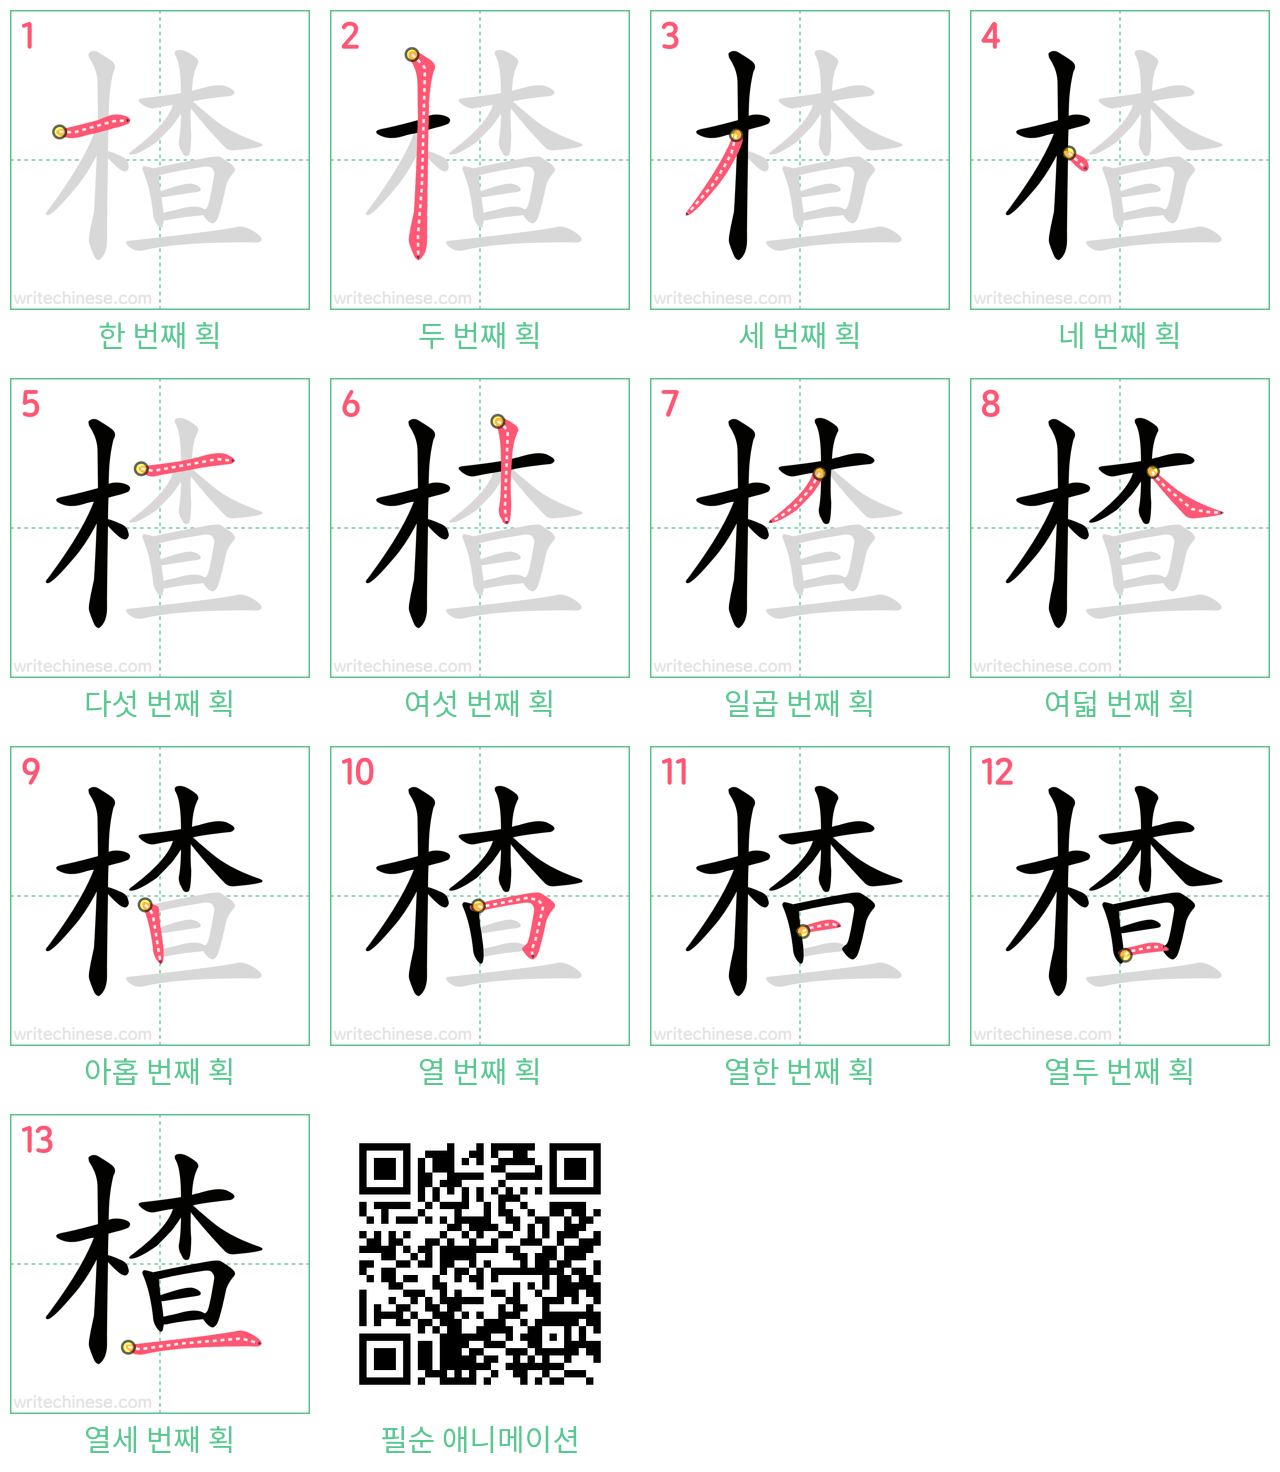 楂 step-by-step stroke order diagrams